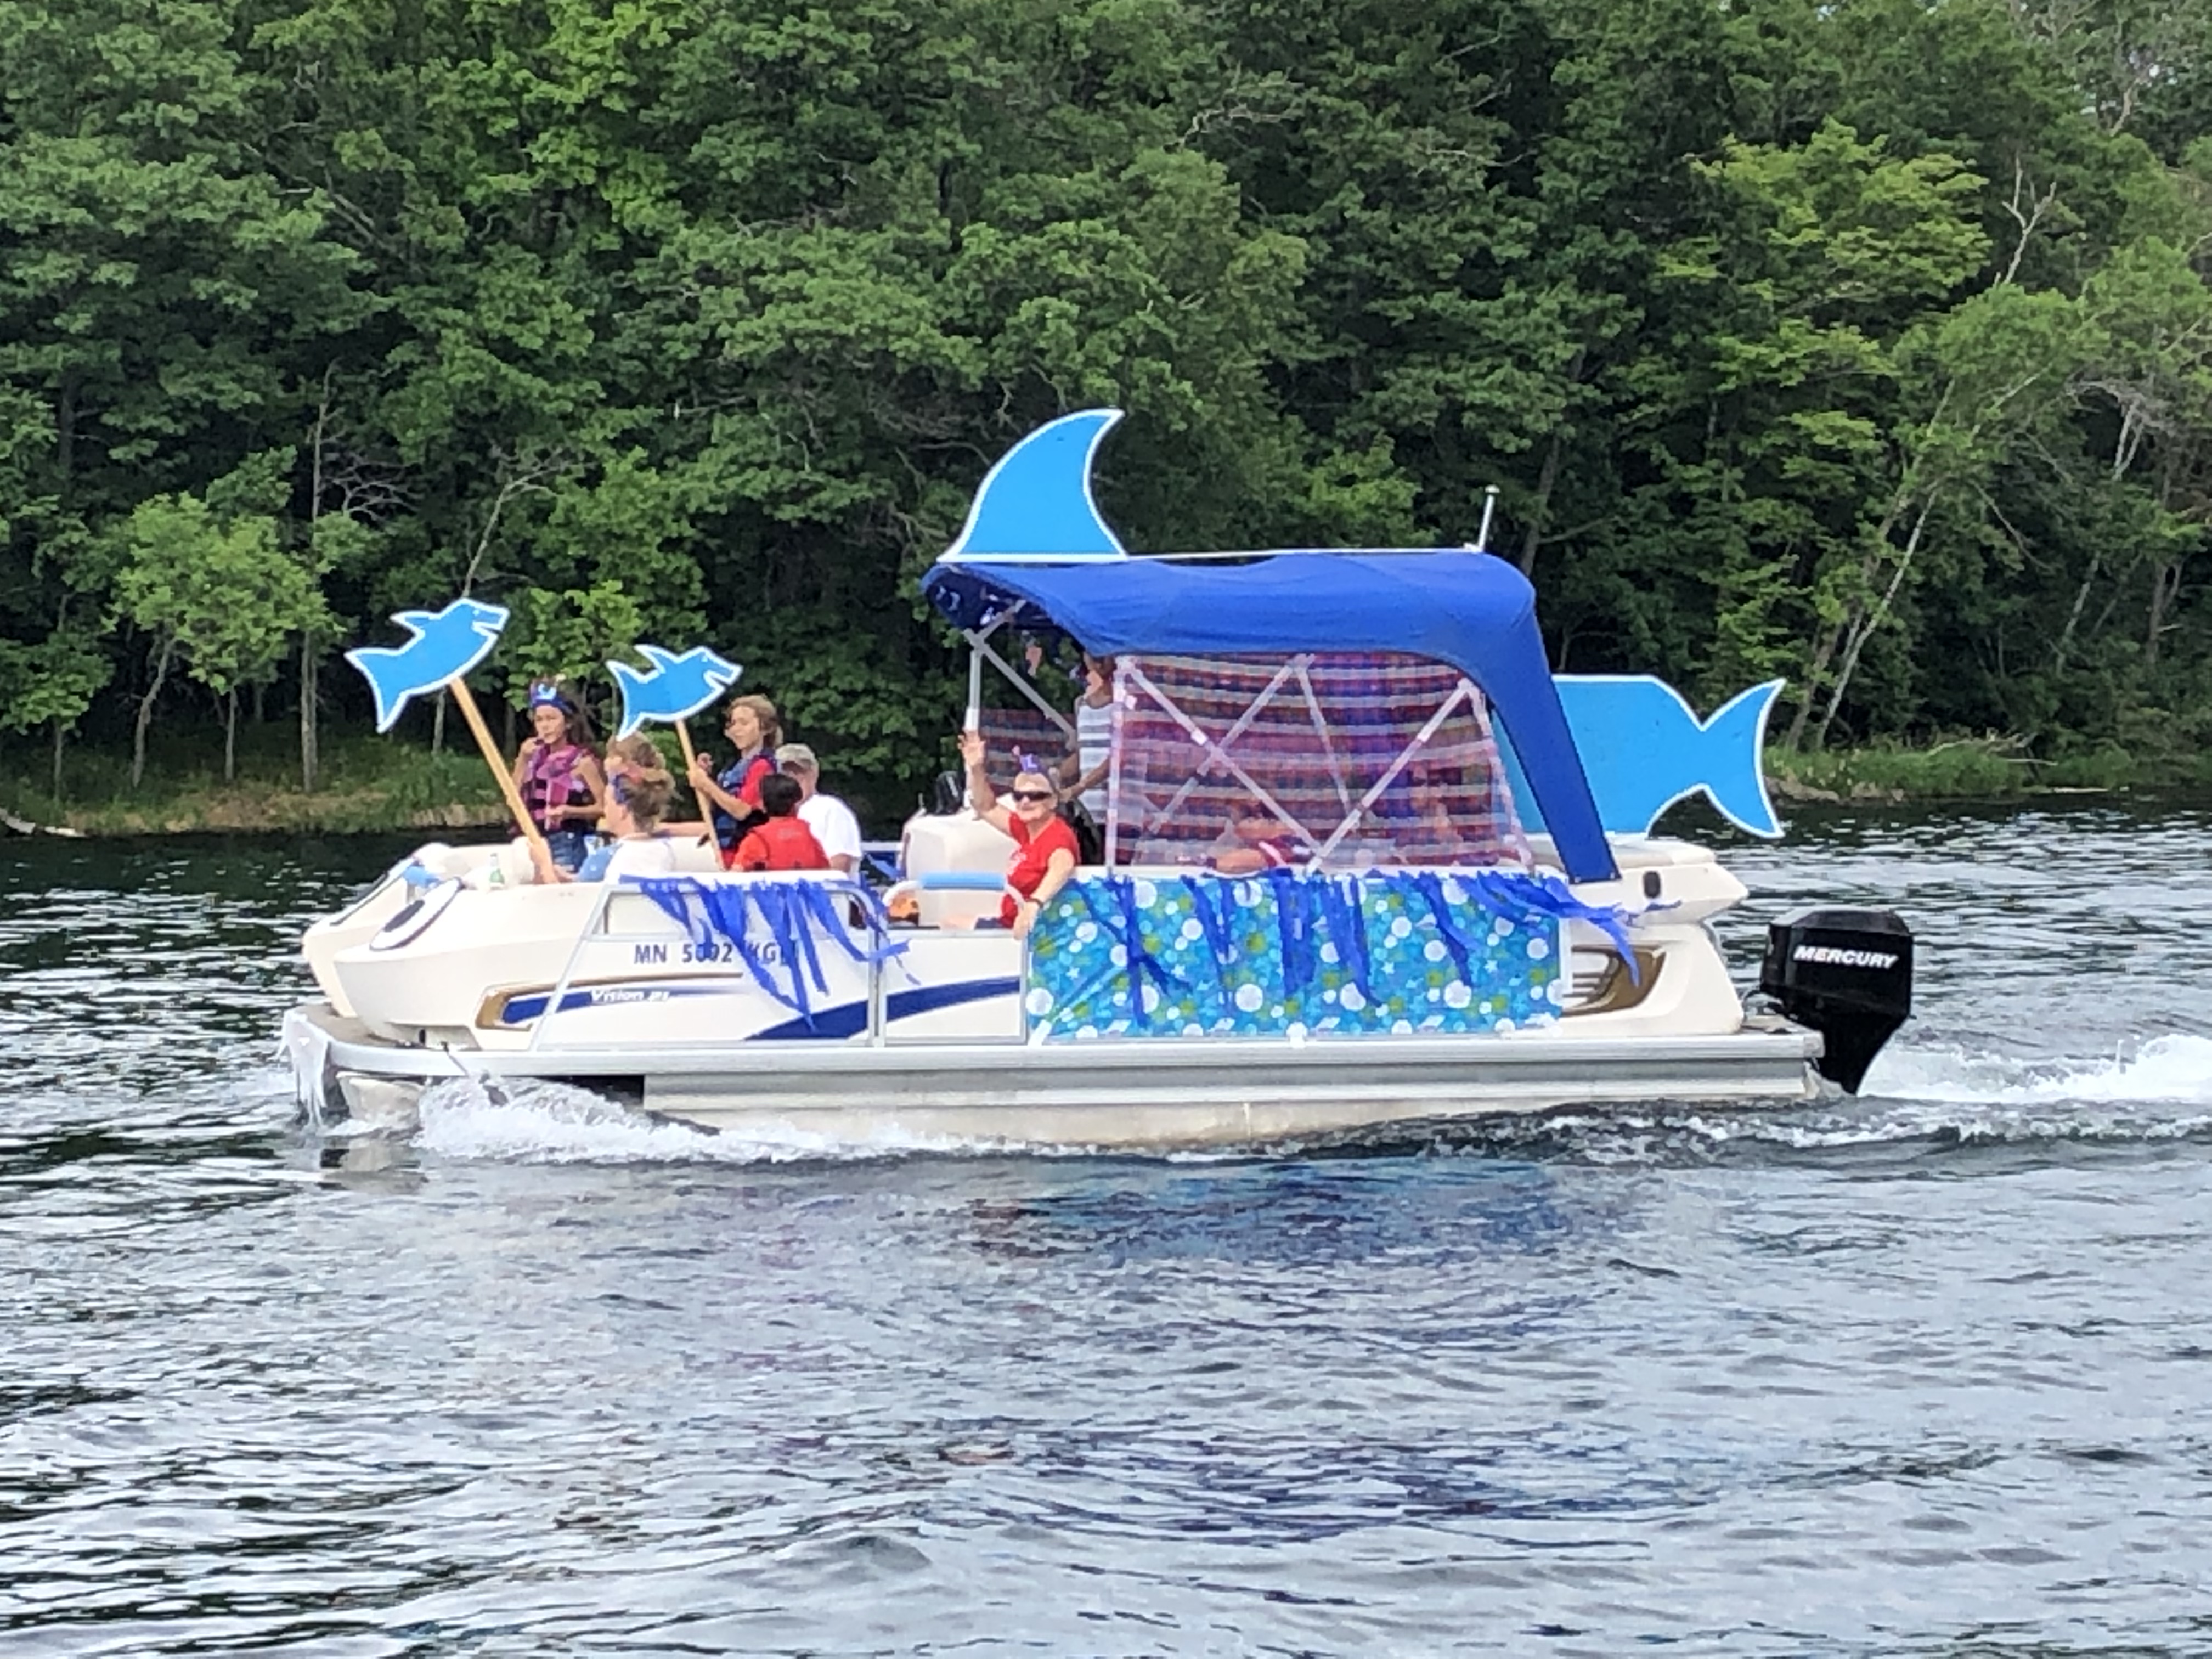 2019 Boat Parade